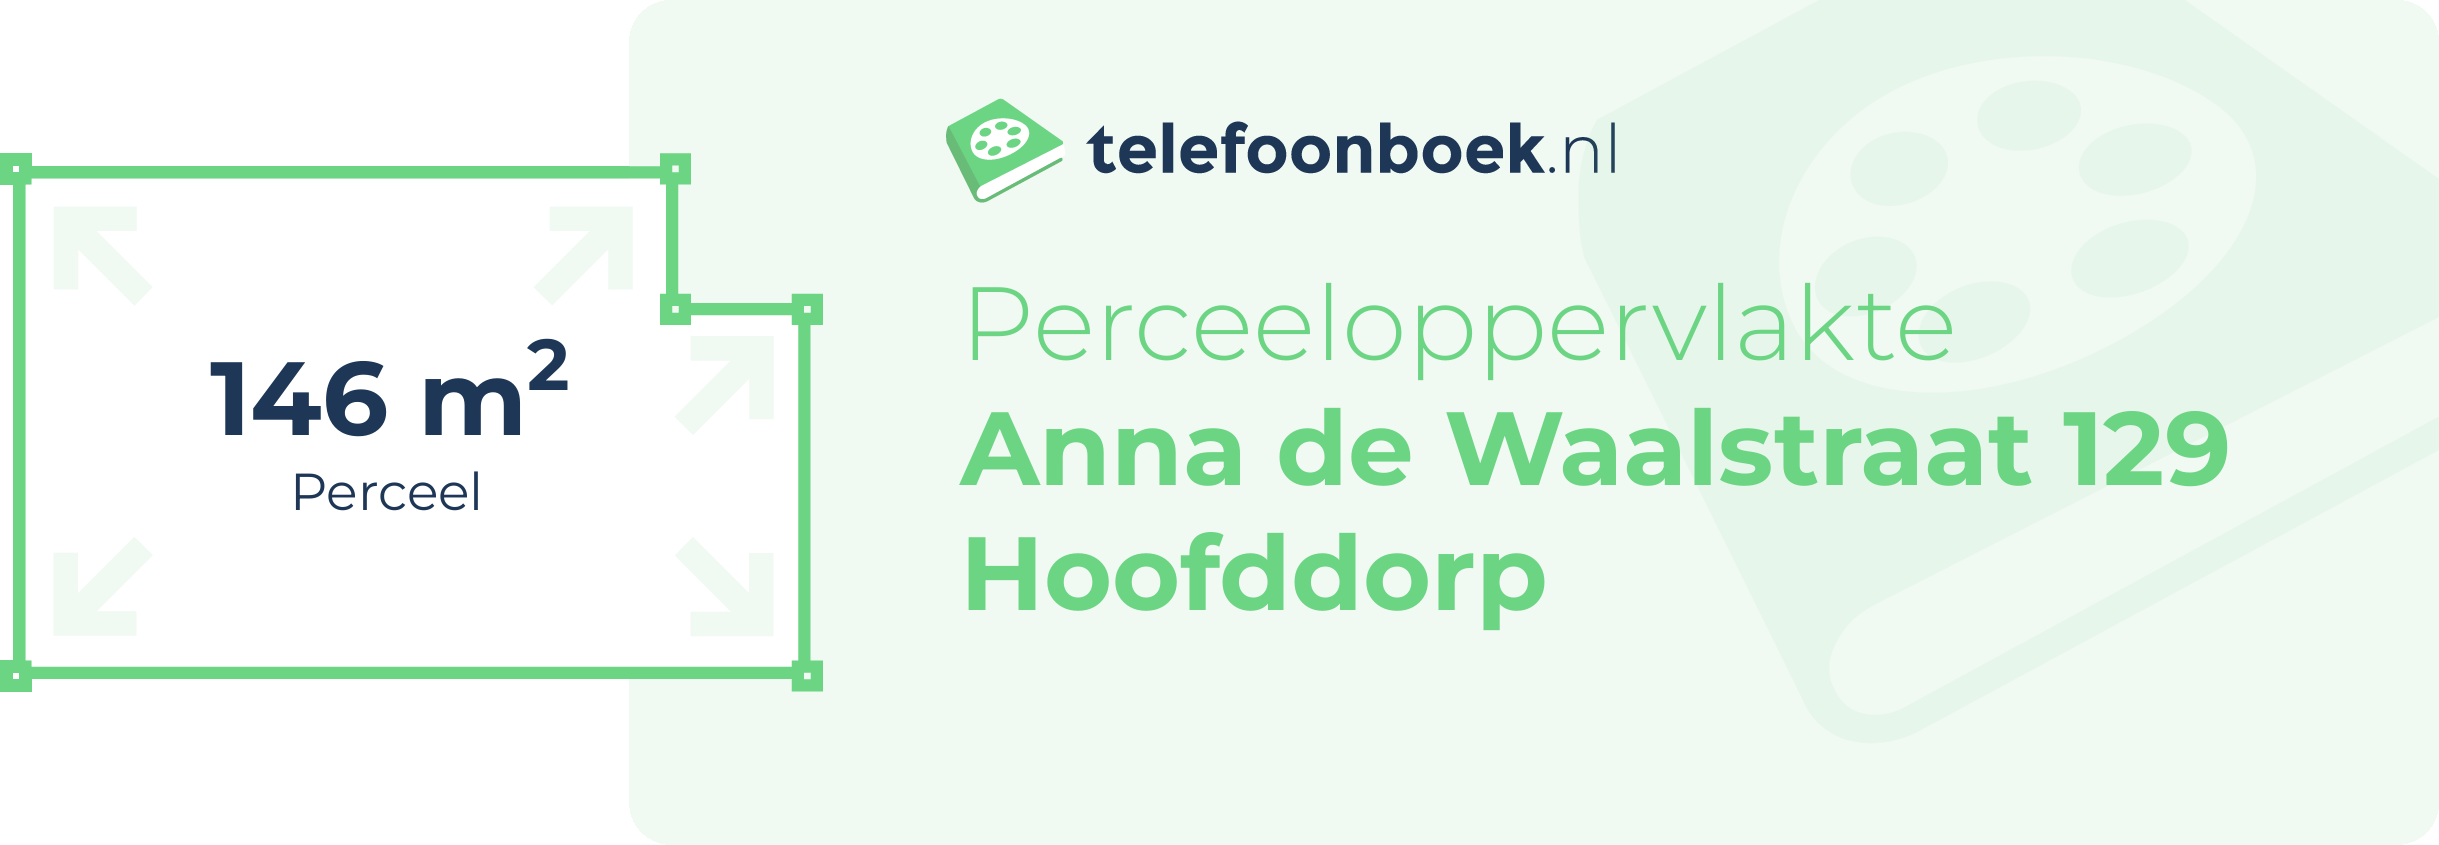 Perceeloppervlakte Anna De Waalstraat 129 Hoofddorp